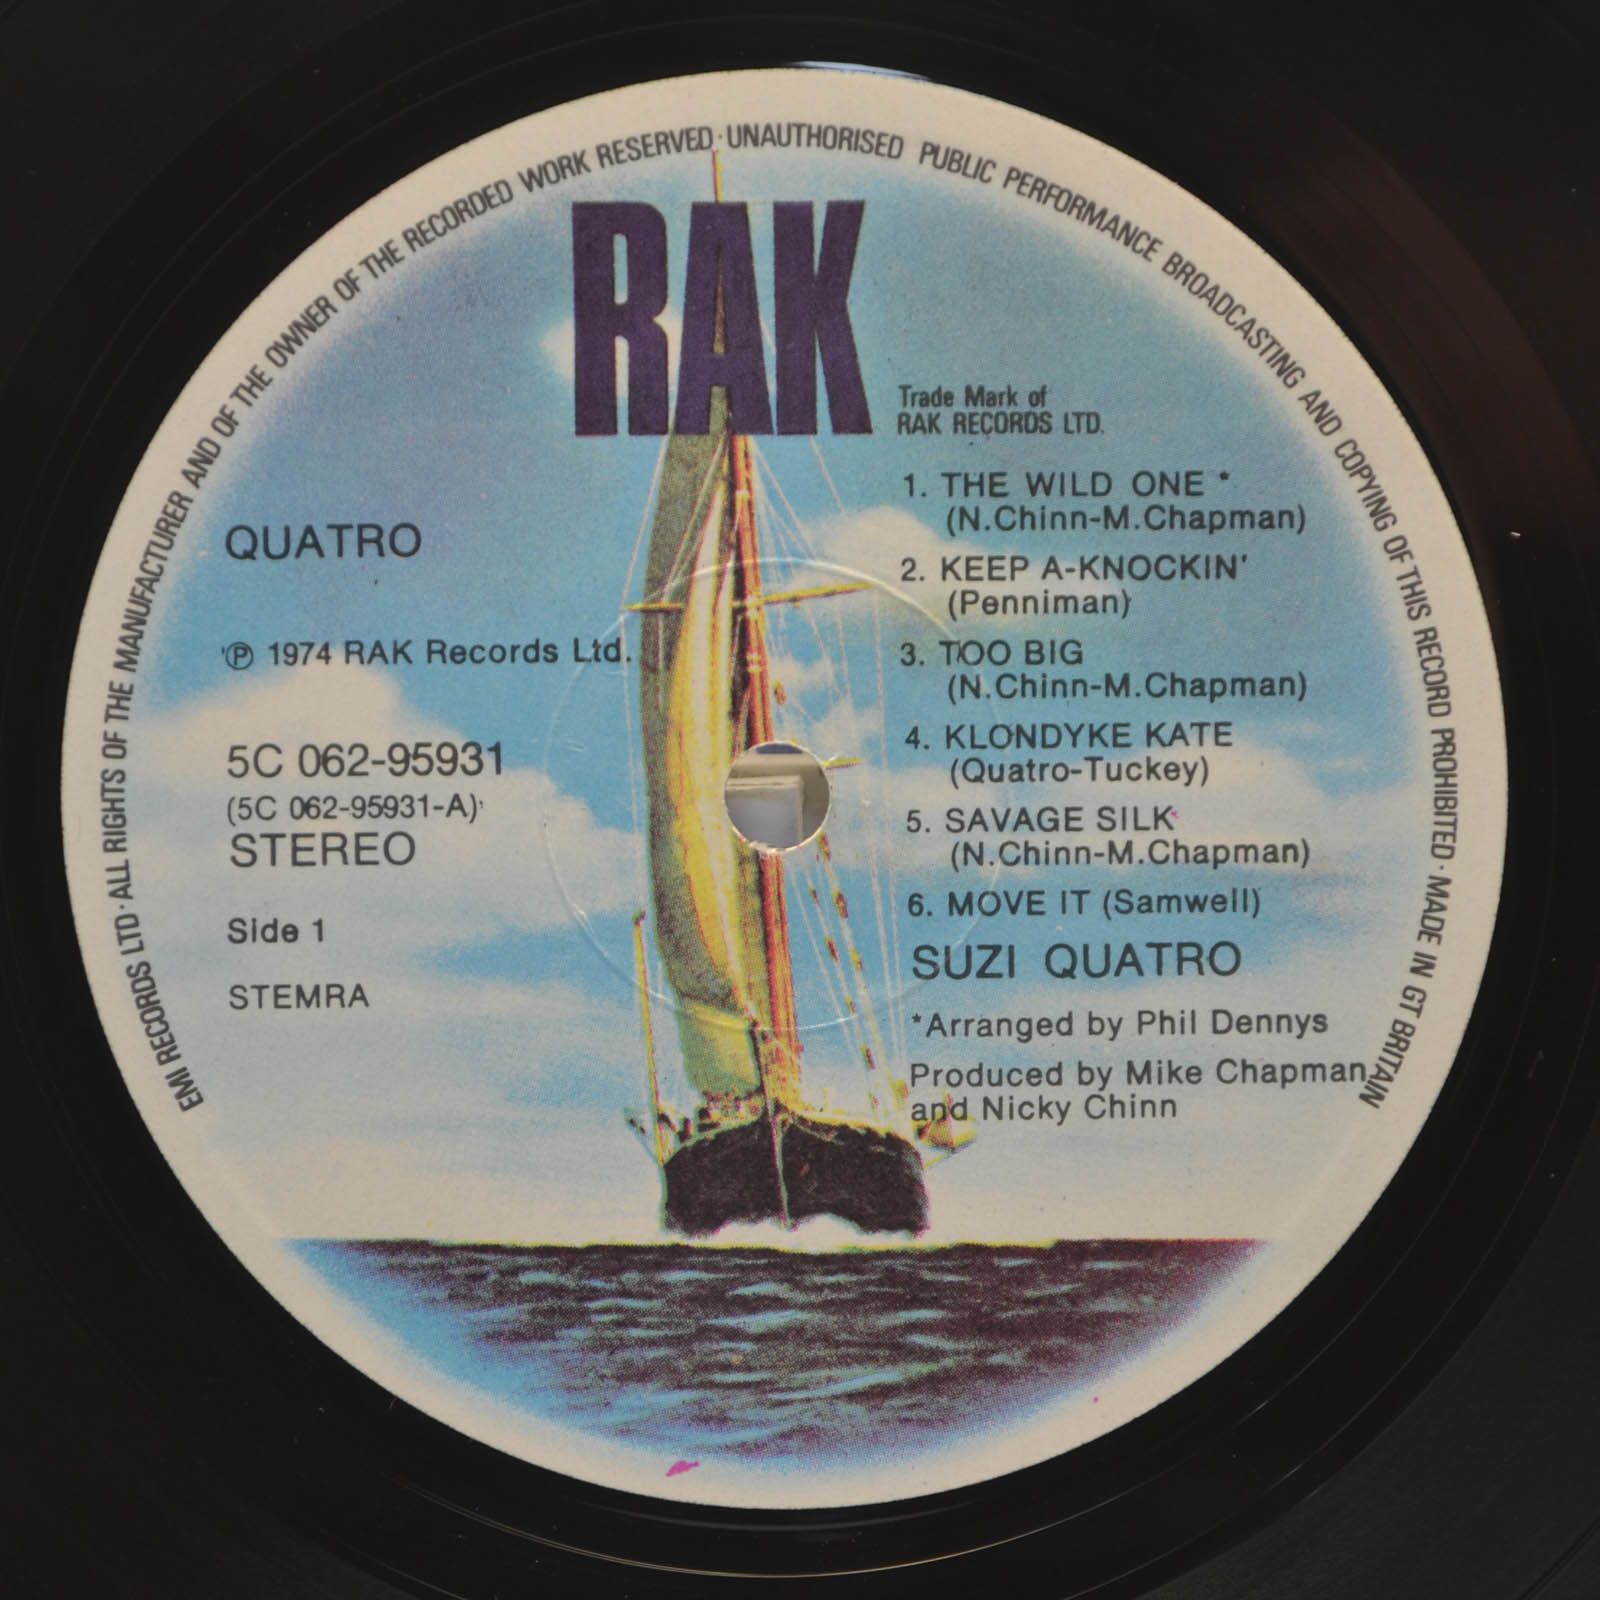 Suzi Quatro — Quatro, 1974